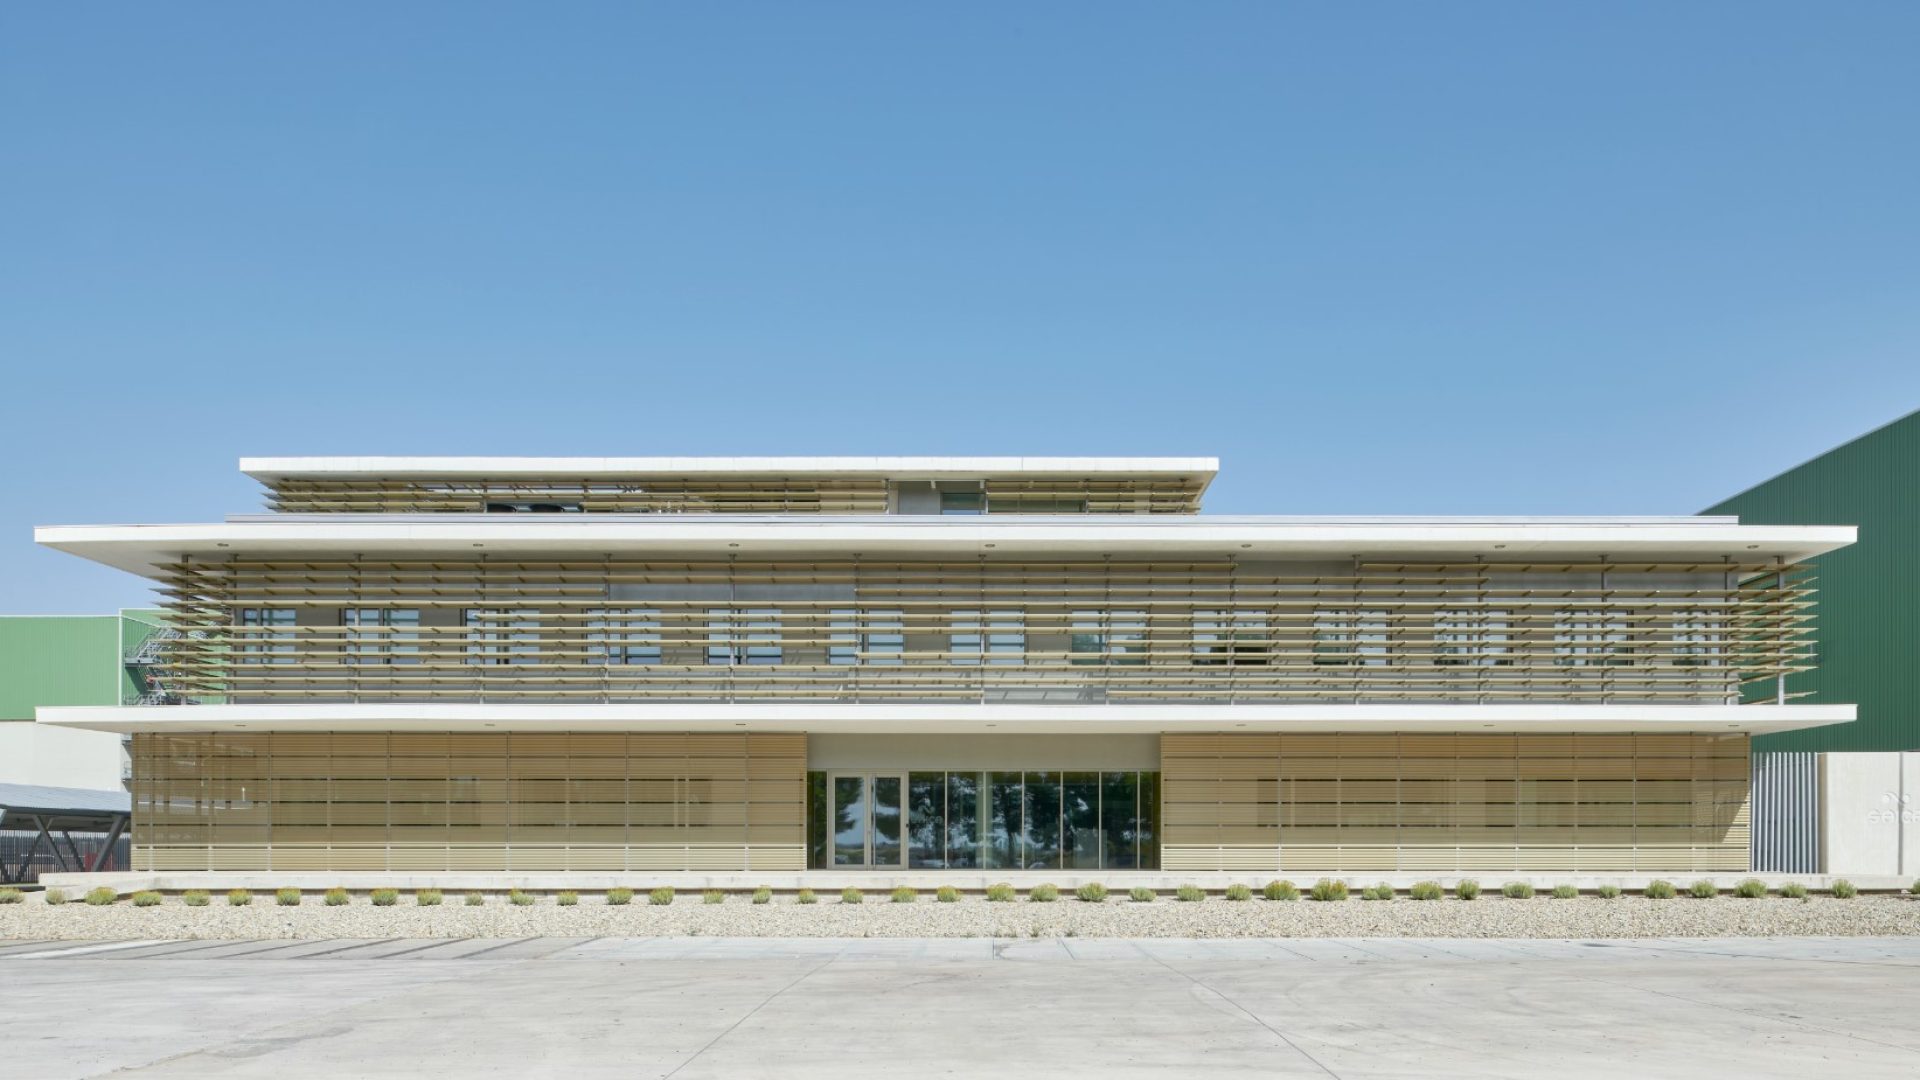 FINALISTA Mejor Iniciativa de Edificación Sostenible y/o Saludable en Aragón: Edificio R + D + I Saica en el Burgo de Ebro de IDOM Consulting Engineering Architecture